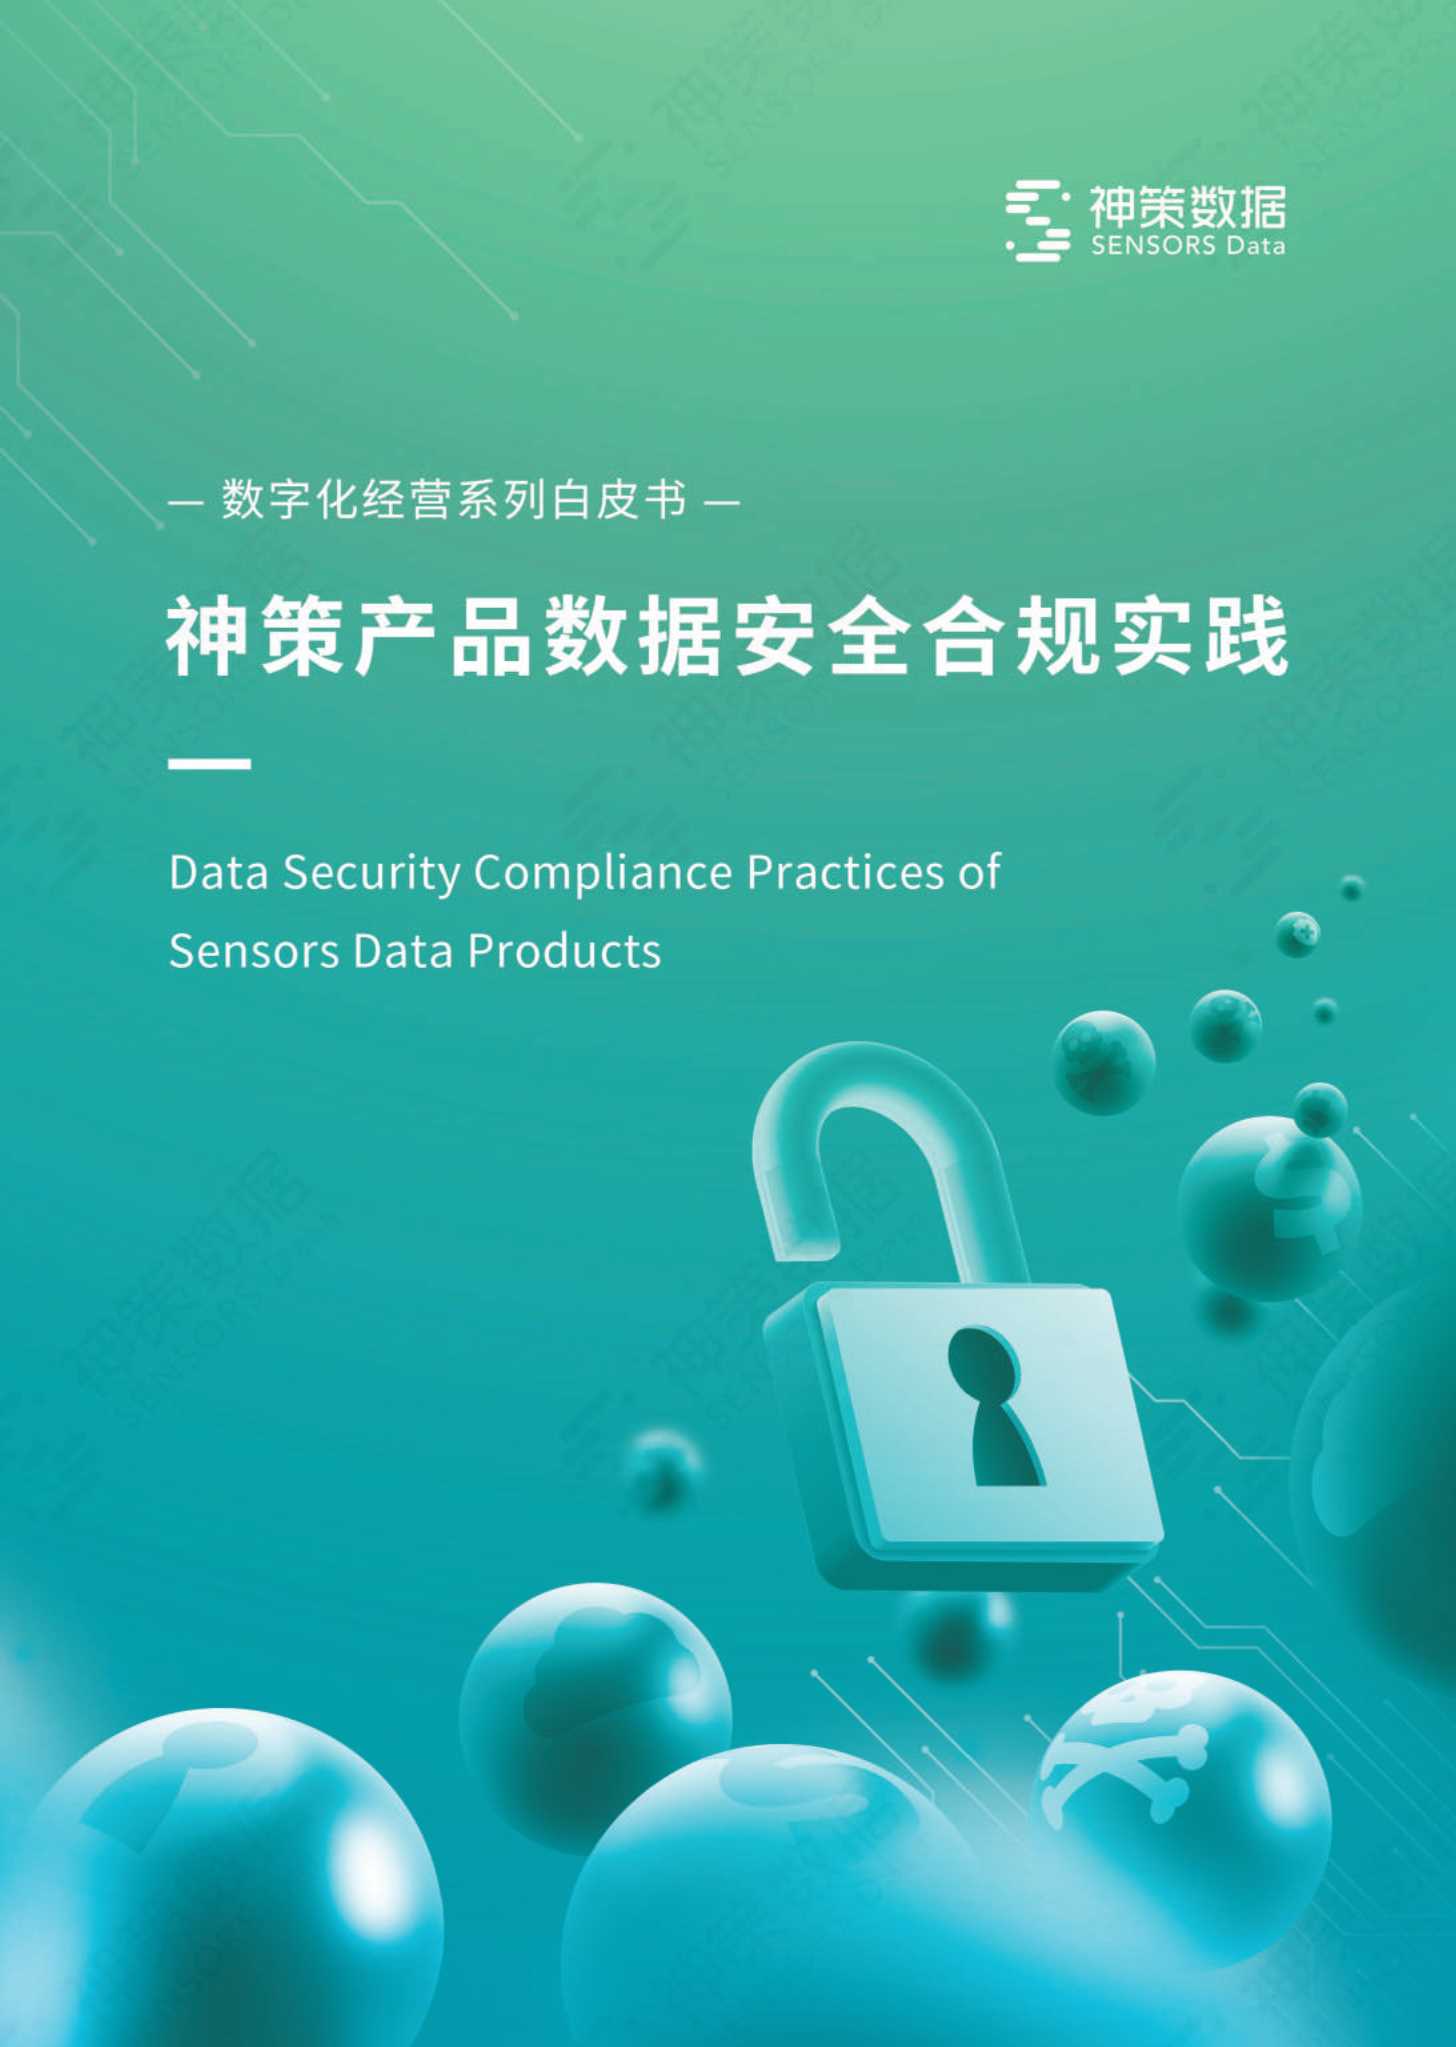 神策数据-神策产品数据安全合规实践白皮书-2022.02-35页